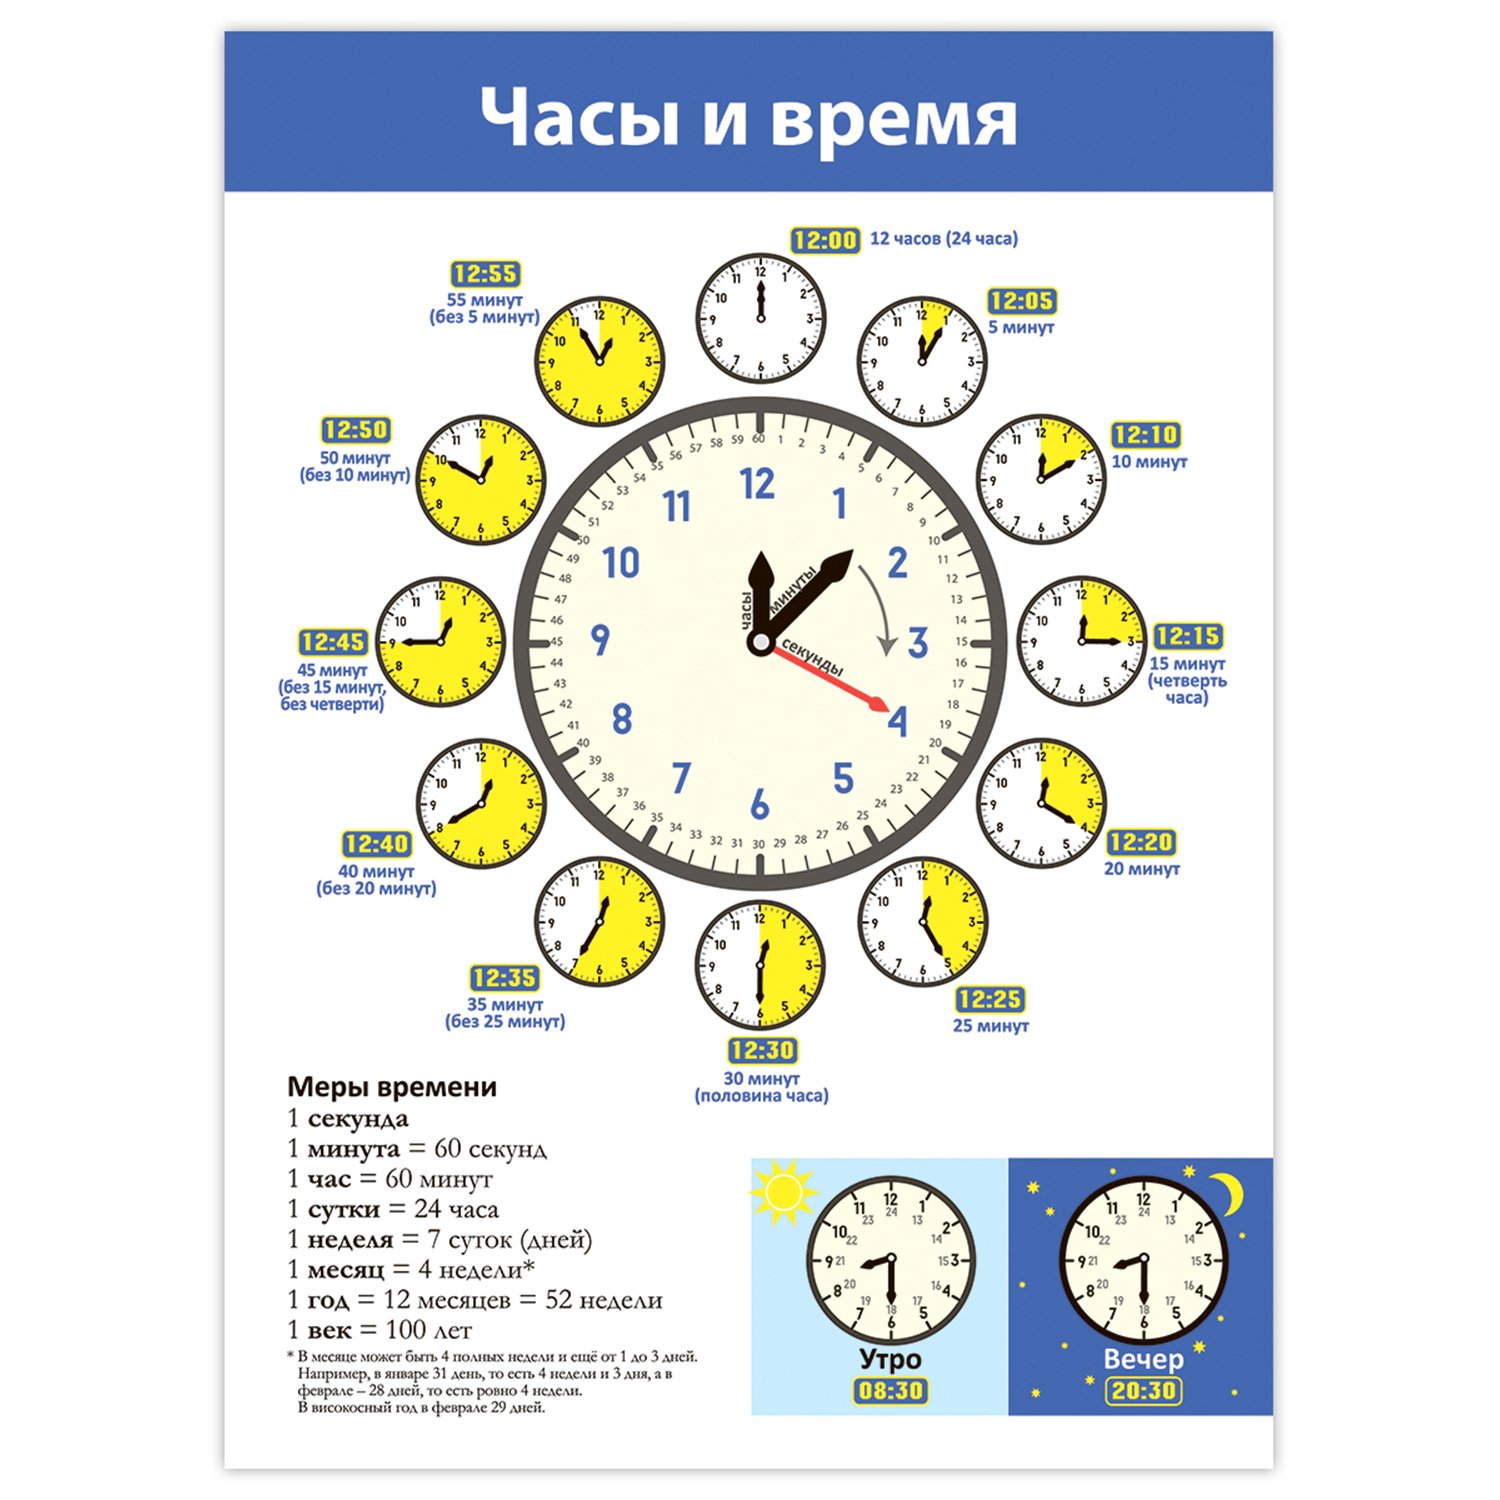 Часы для изучения времени